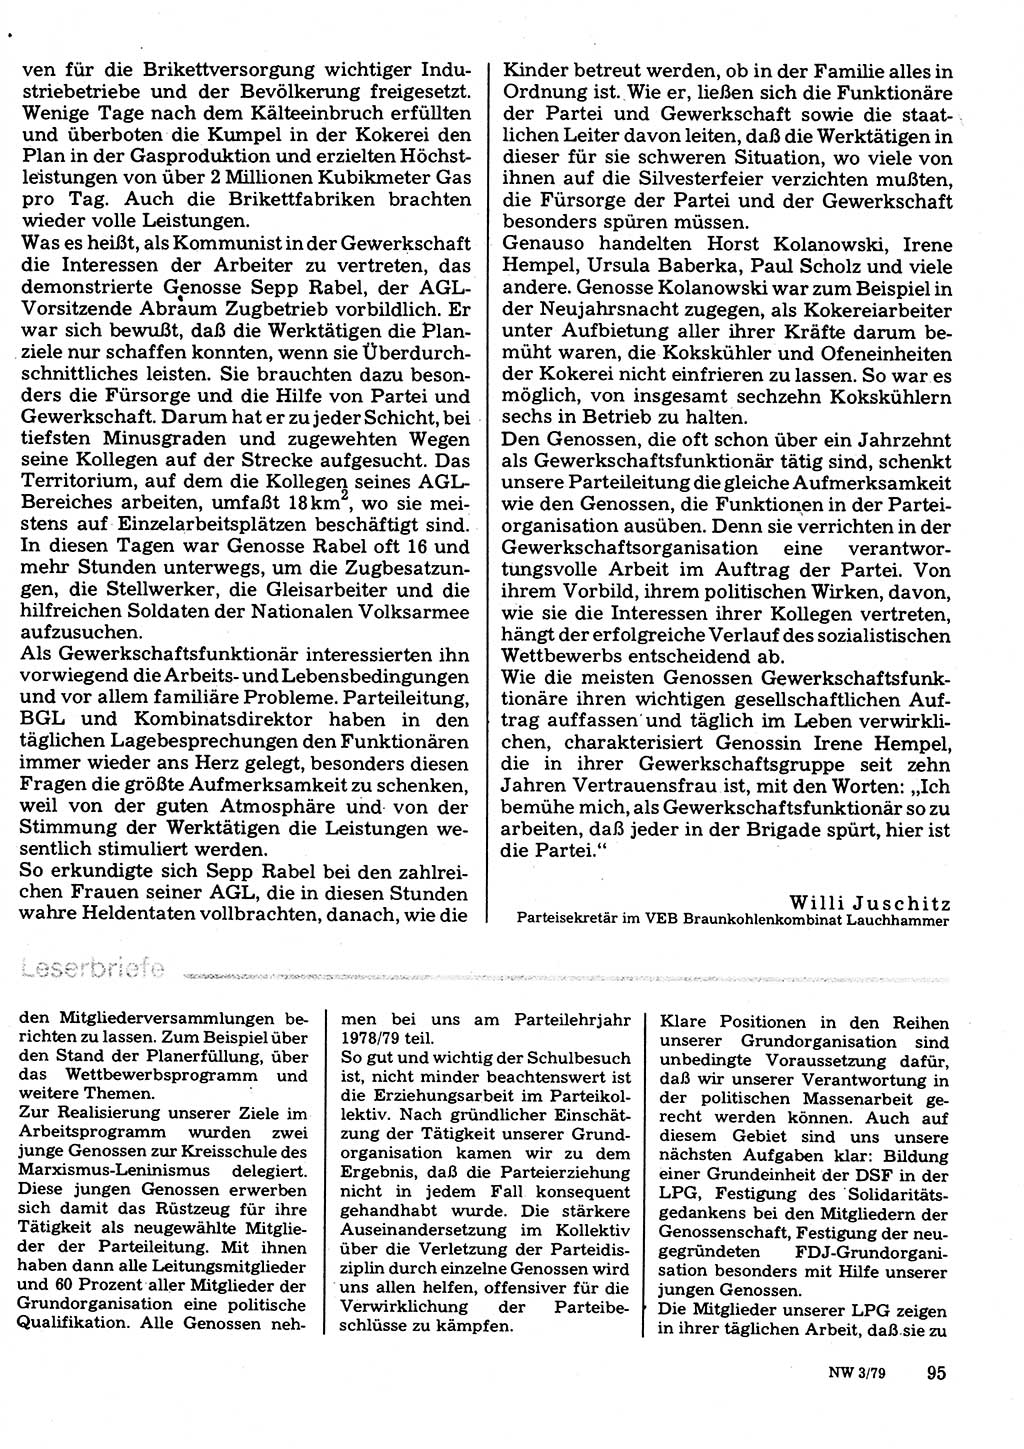 Neuer Weg (NW), Organ des Zentralkomitees (ZK) der SED (Sozialistische Einheitspartei Deutschlands) für Fragen des Parteilebens, 34. Jahrgang [Deutsche Demokratische Republik (DDR)] 1979, Seite 95 (NW ZK SED DDR 1979, S. 95)